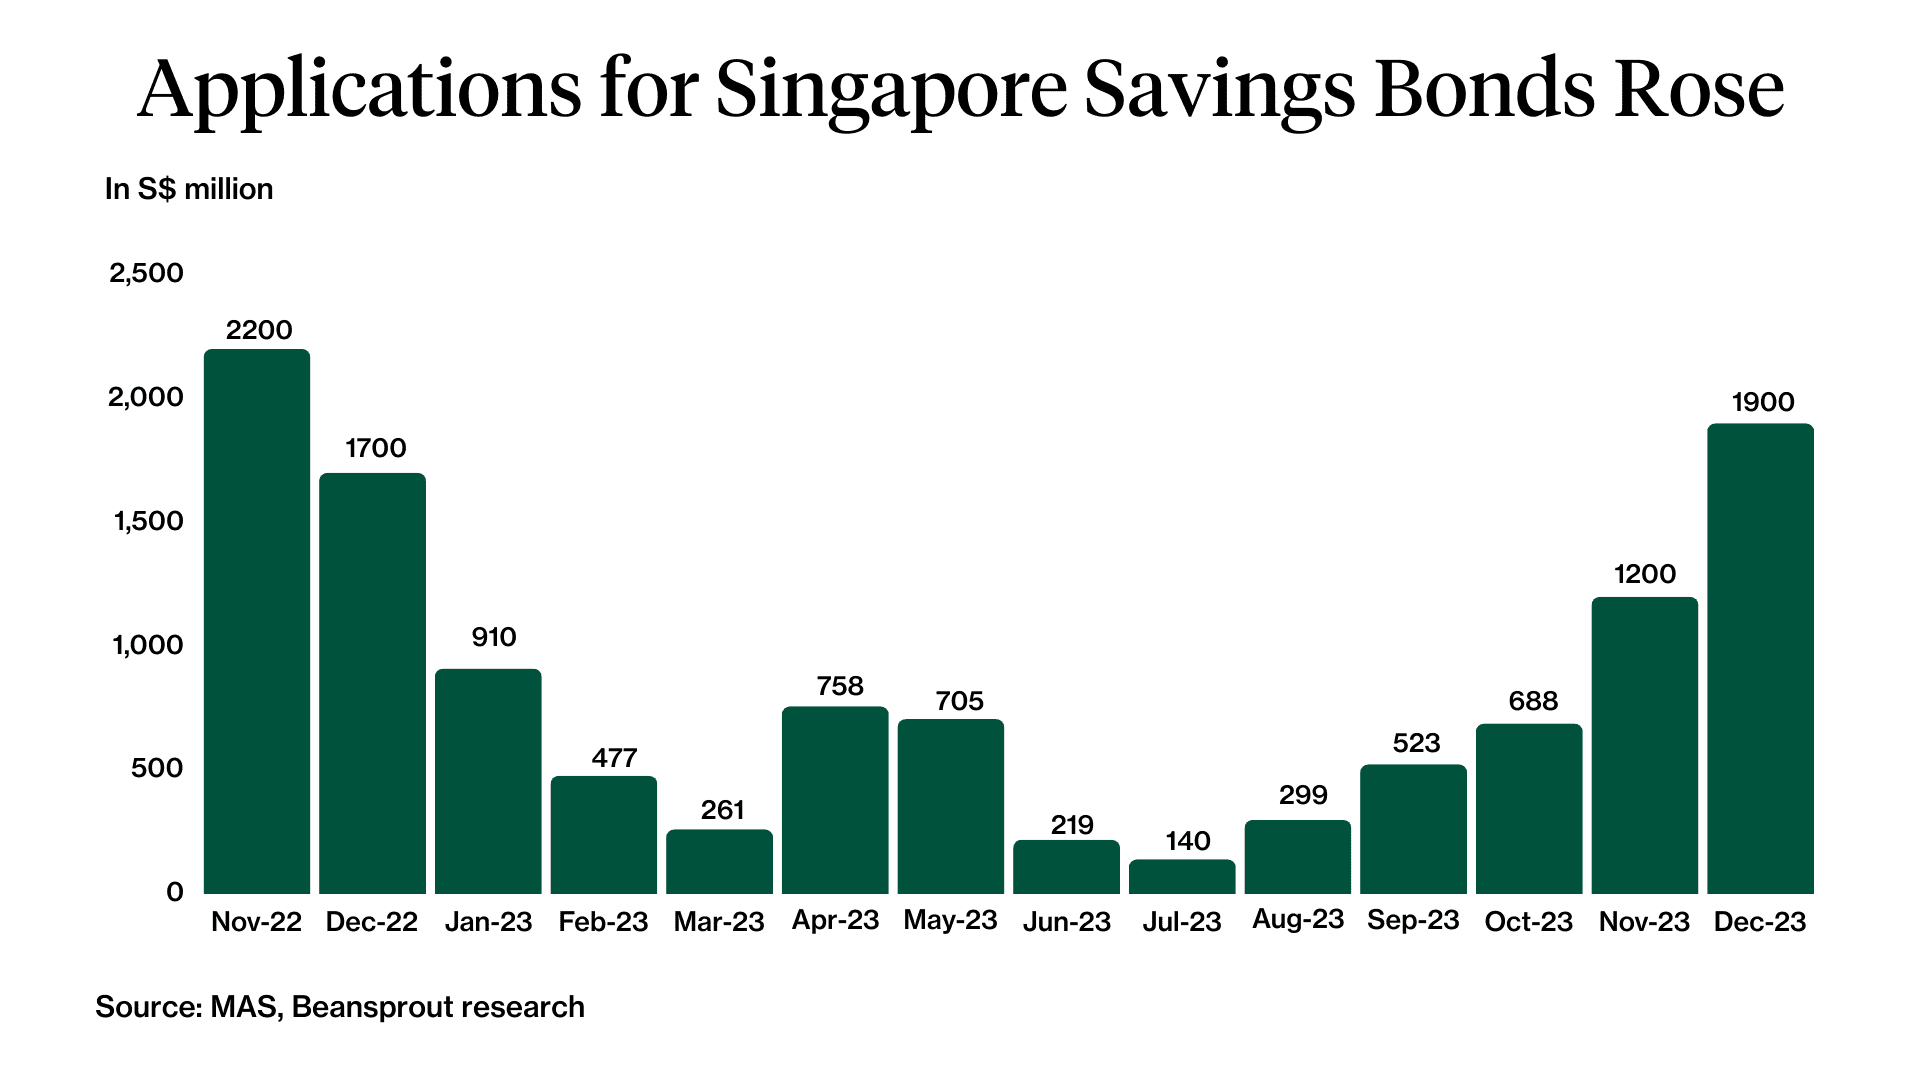 ssb singapore savings bond applications nov 2023